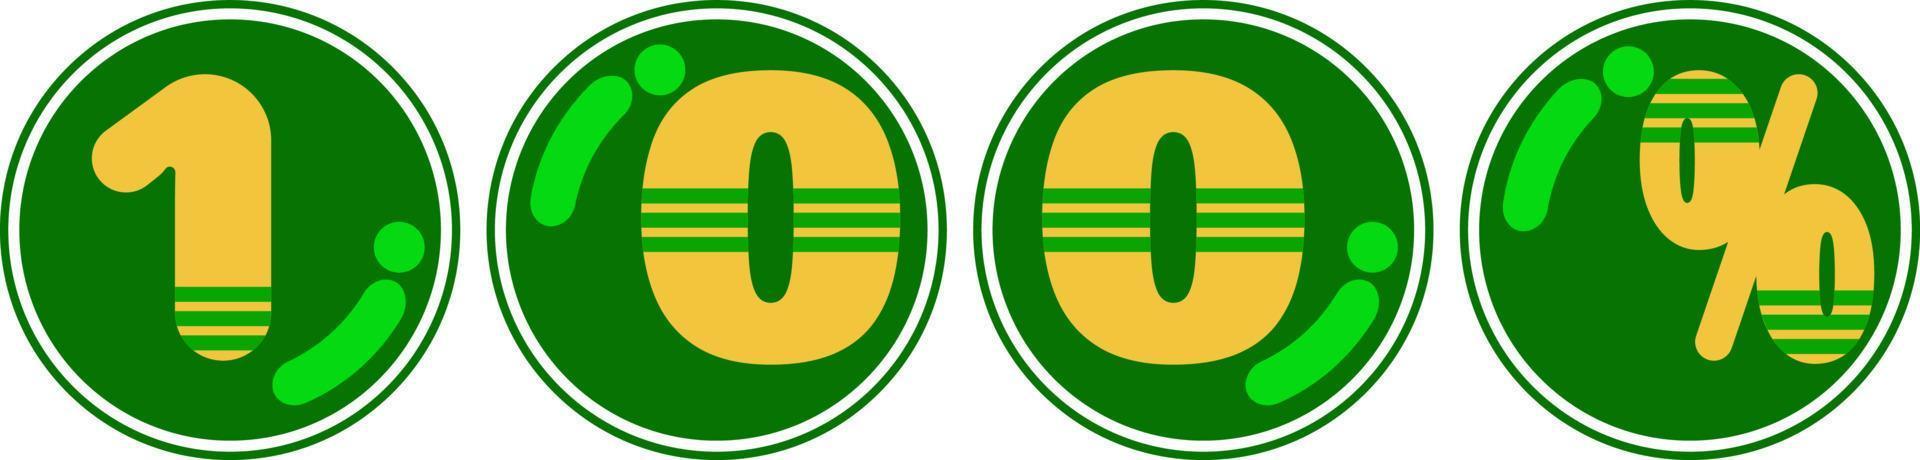 Naturel badge timbre style ingrédient élément icône vecteur